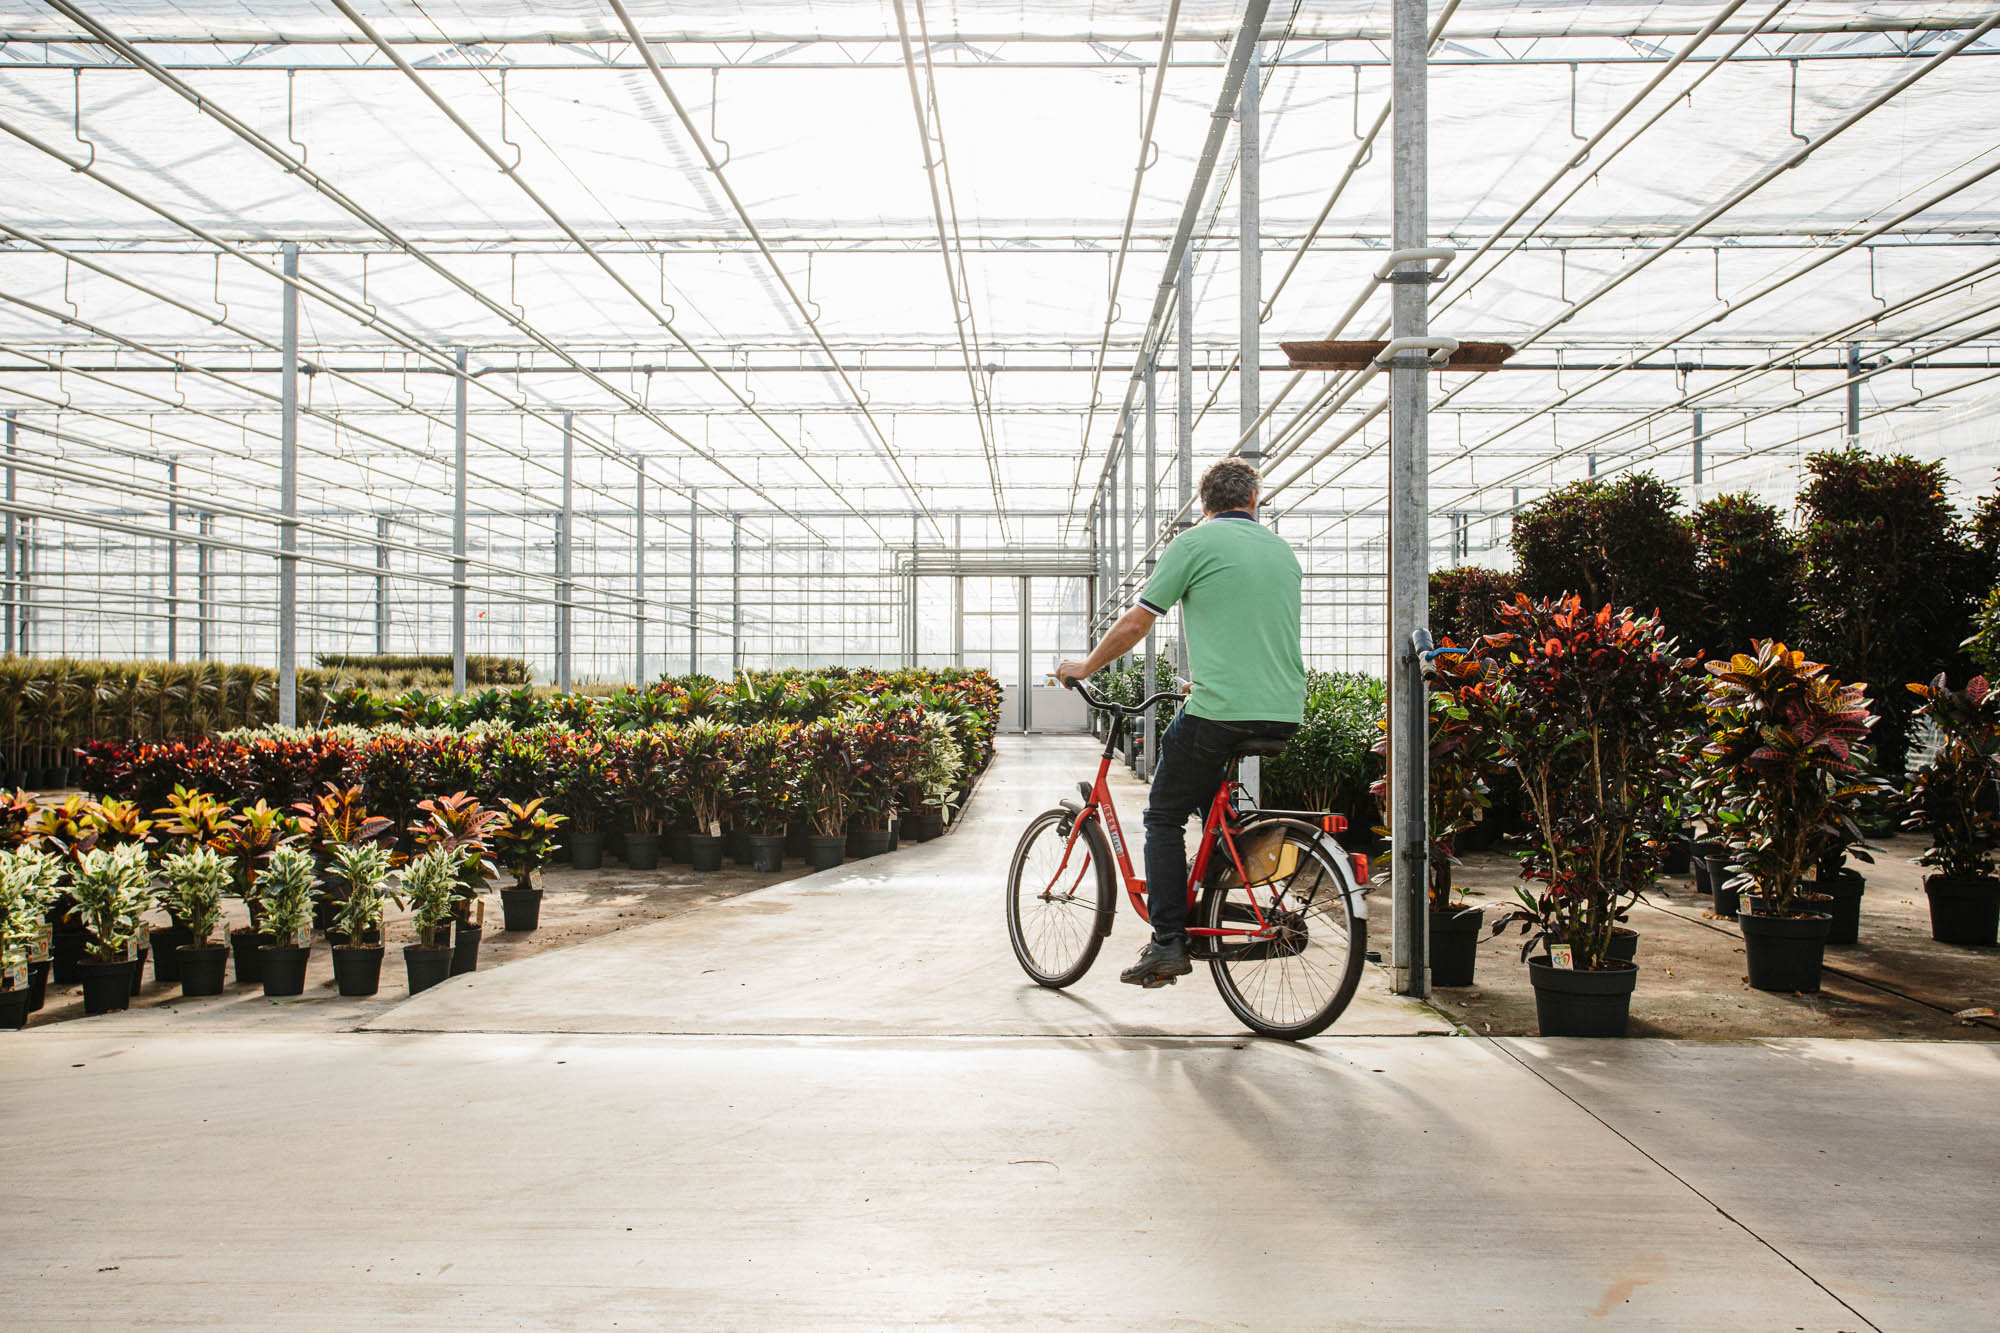 man on bike in nursery with plants